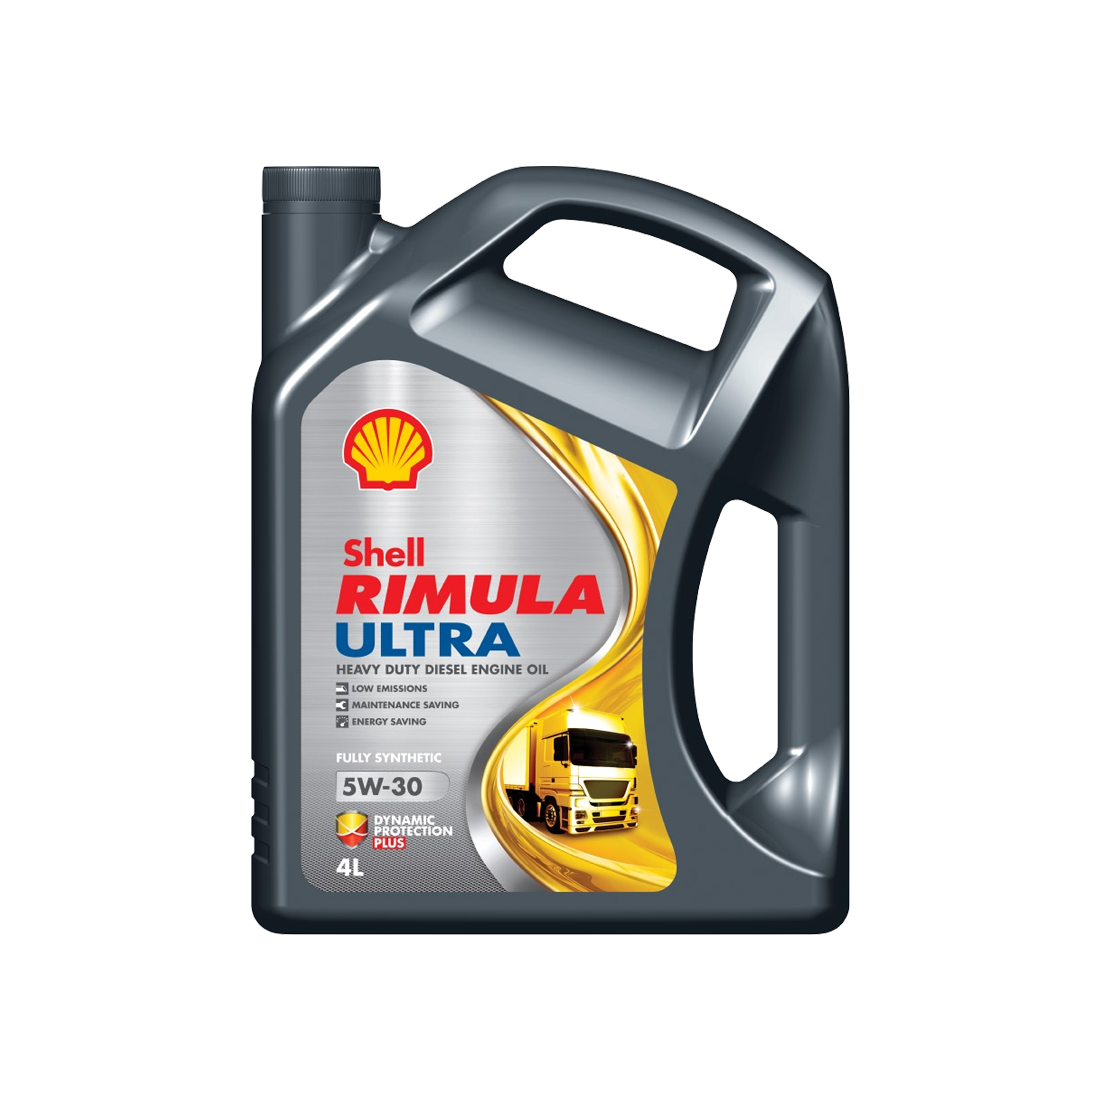 Shell Rimula Ultra 5W-30, 5L